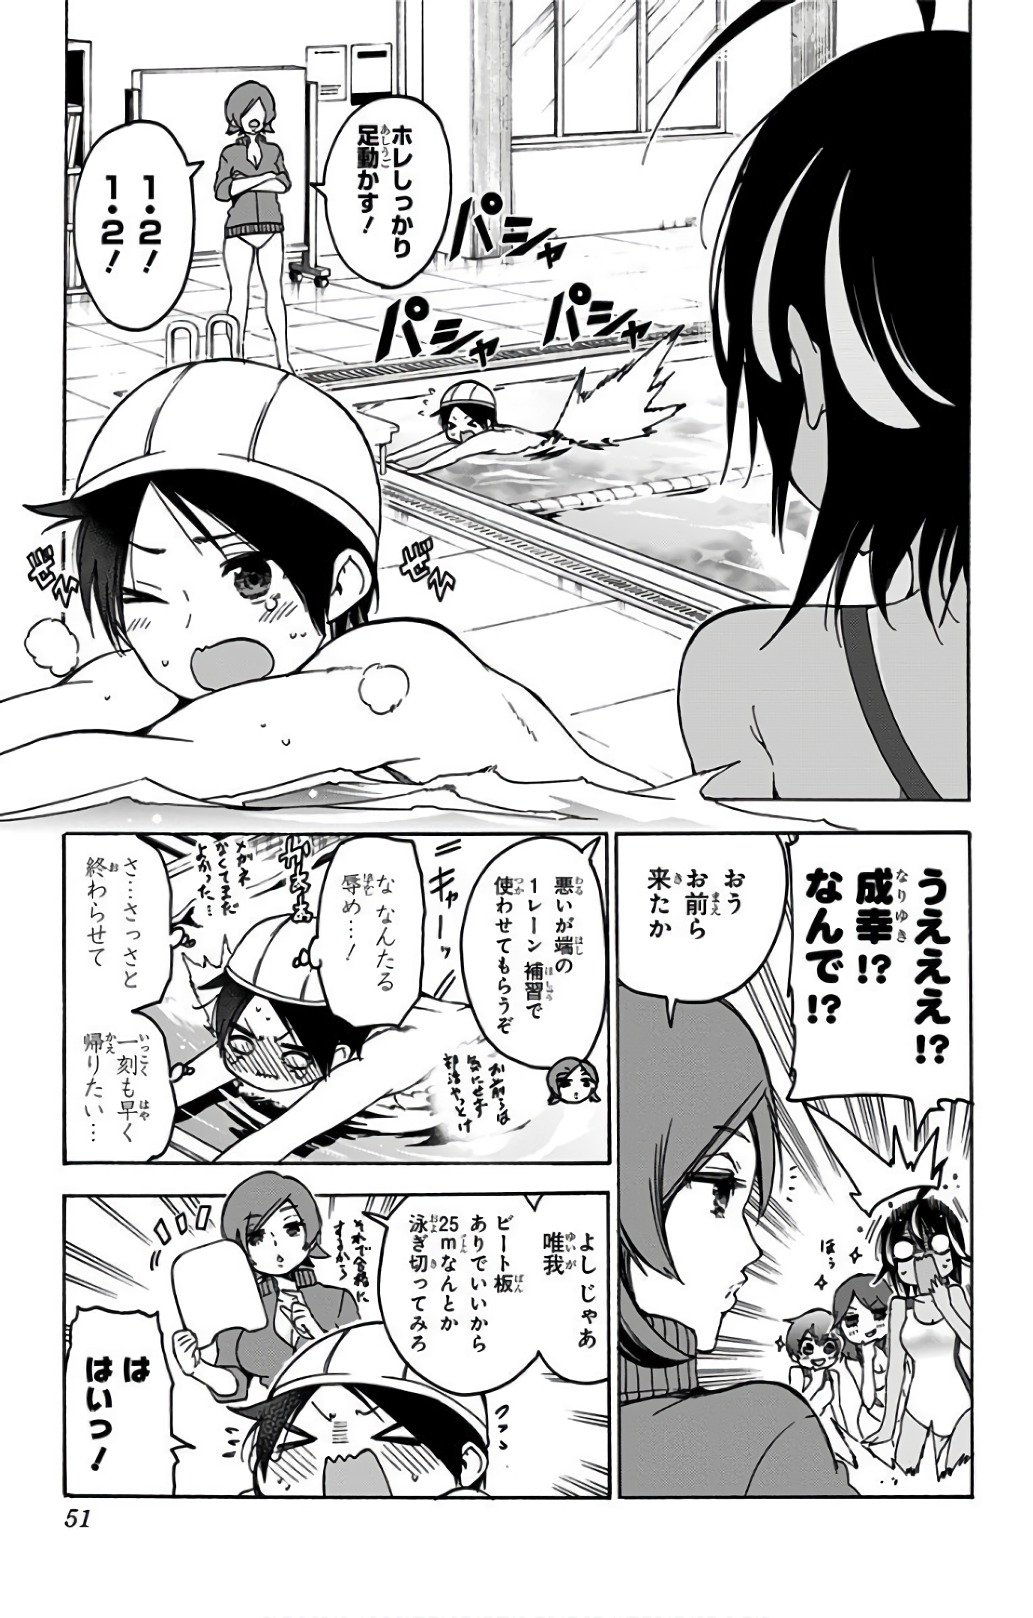 Bokutachi wa Benkyou ga Dekinai - Chapter 63 - Page 3